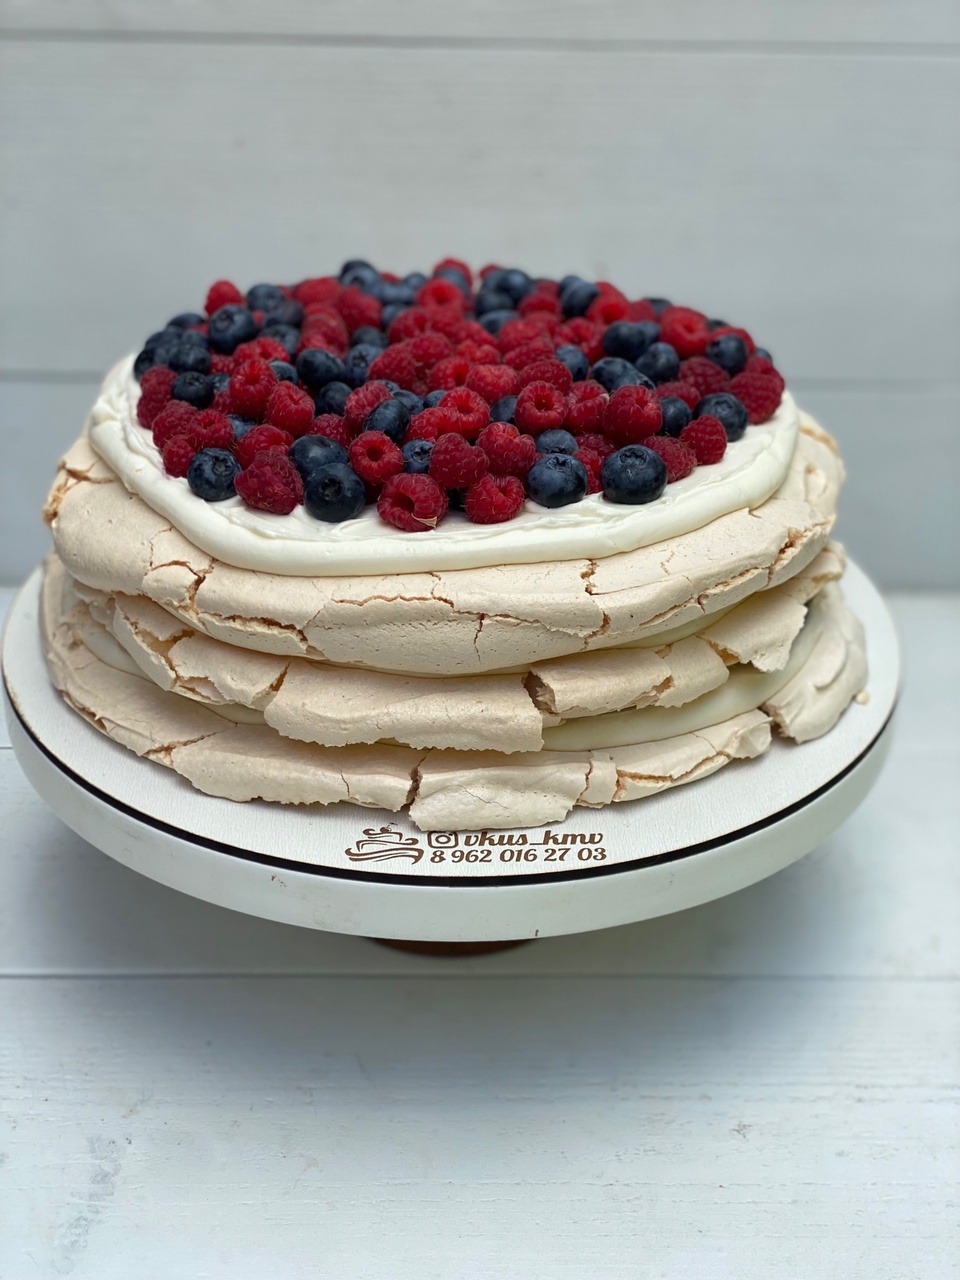 Меренговый торт - 1 700 ₽, заказать онлайн.